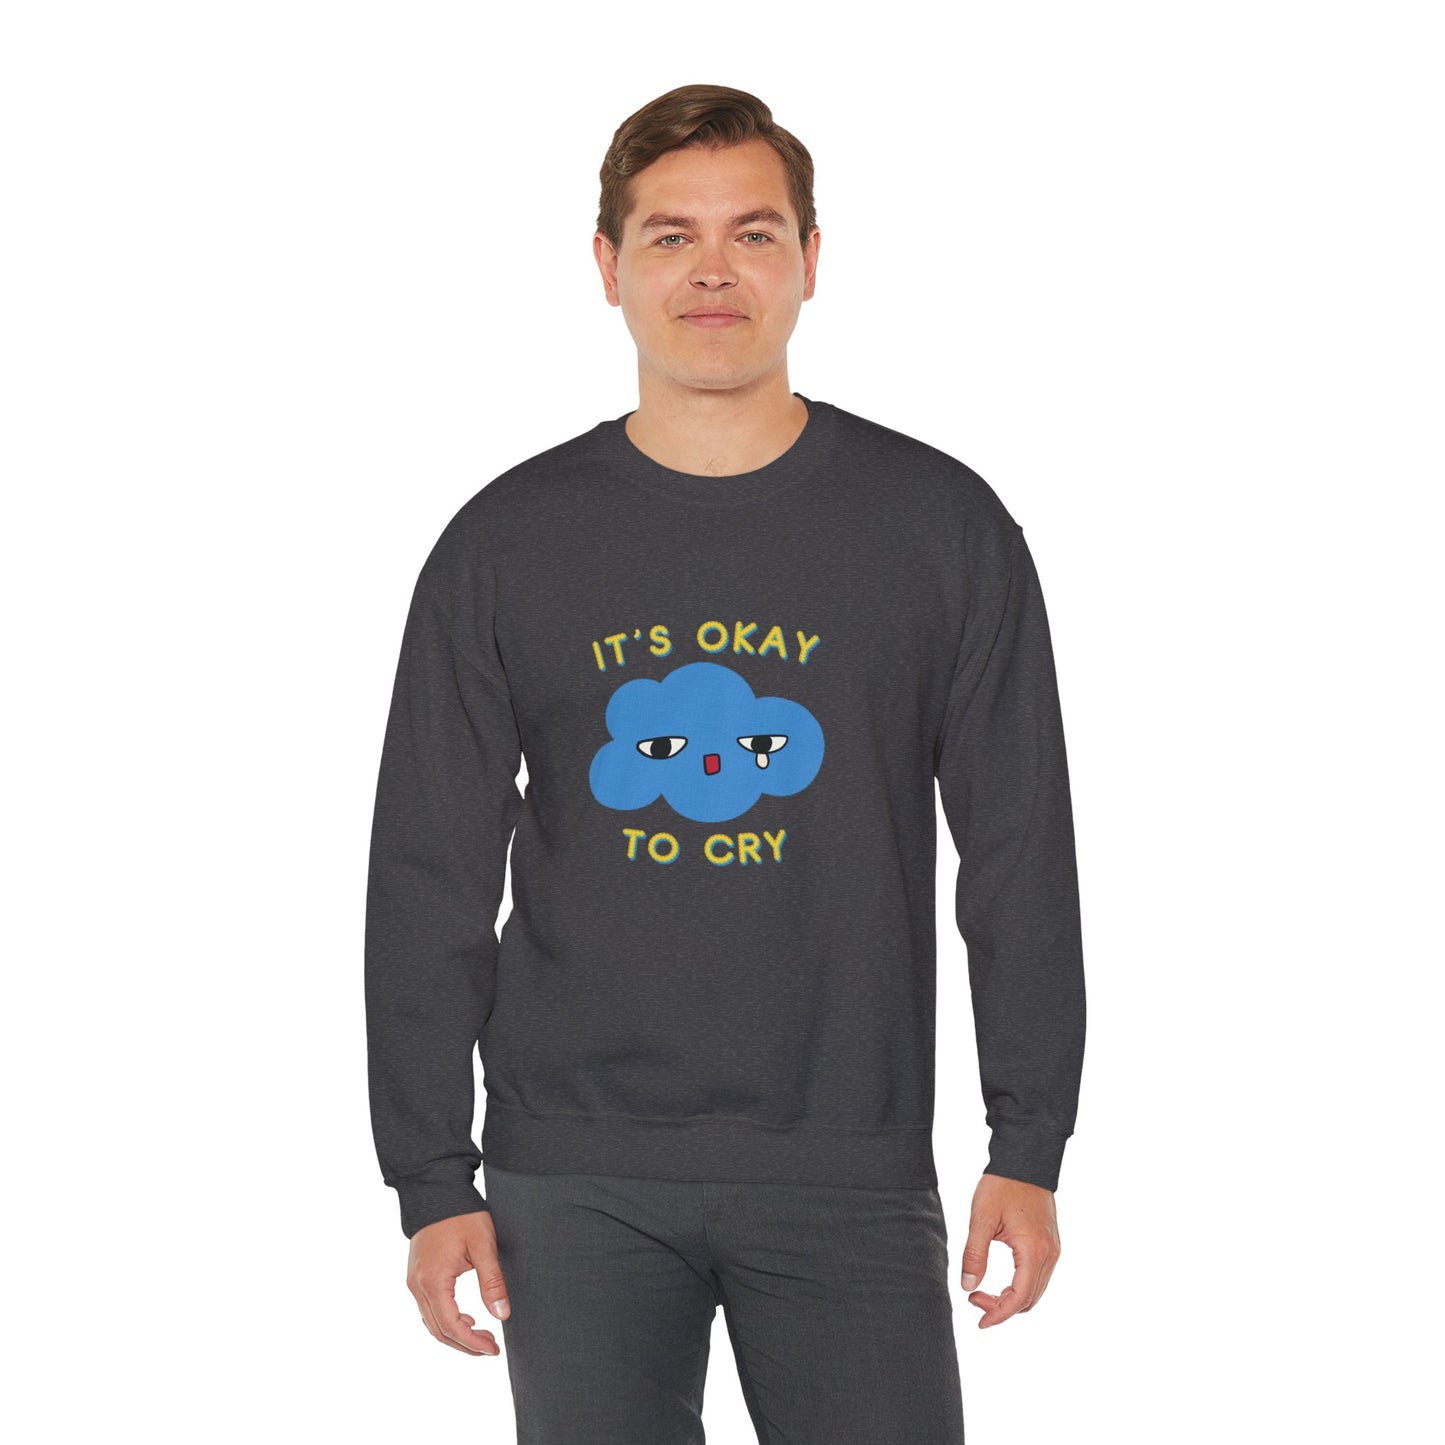 "It's Okay to Cry" Crewneck Sweatshirt